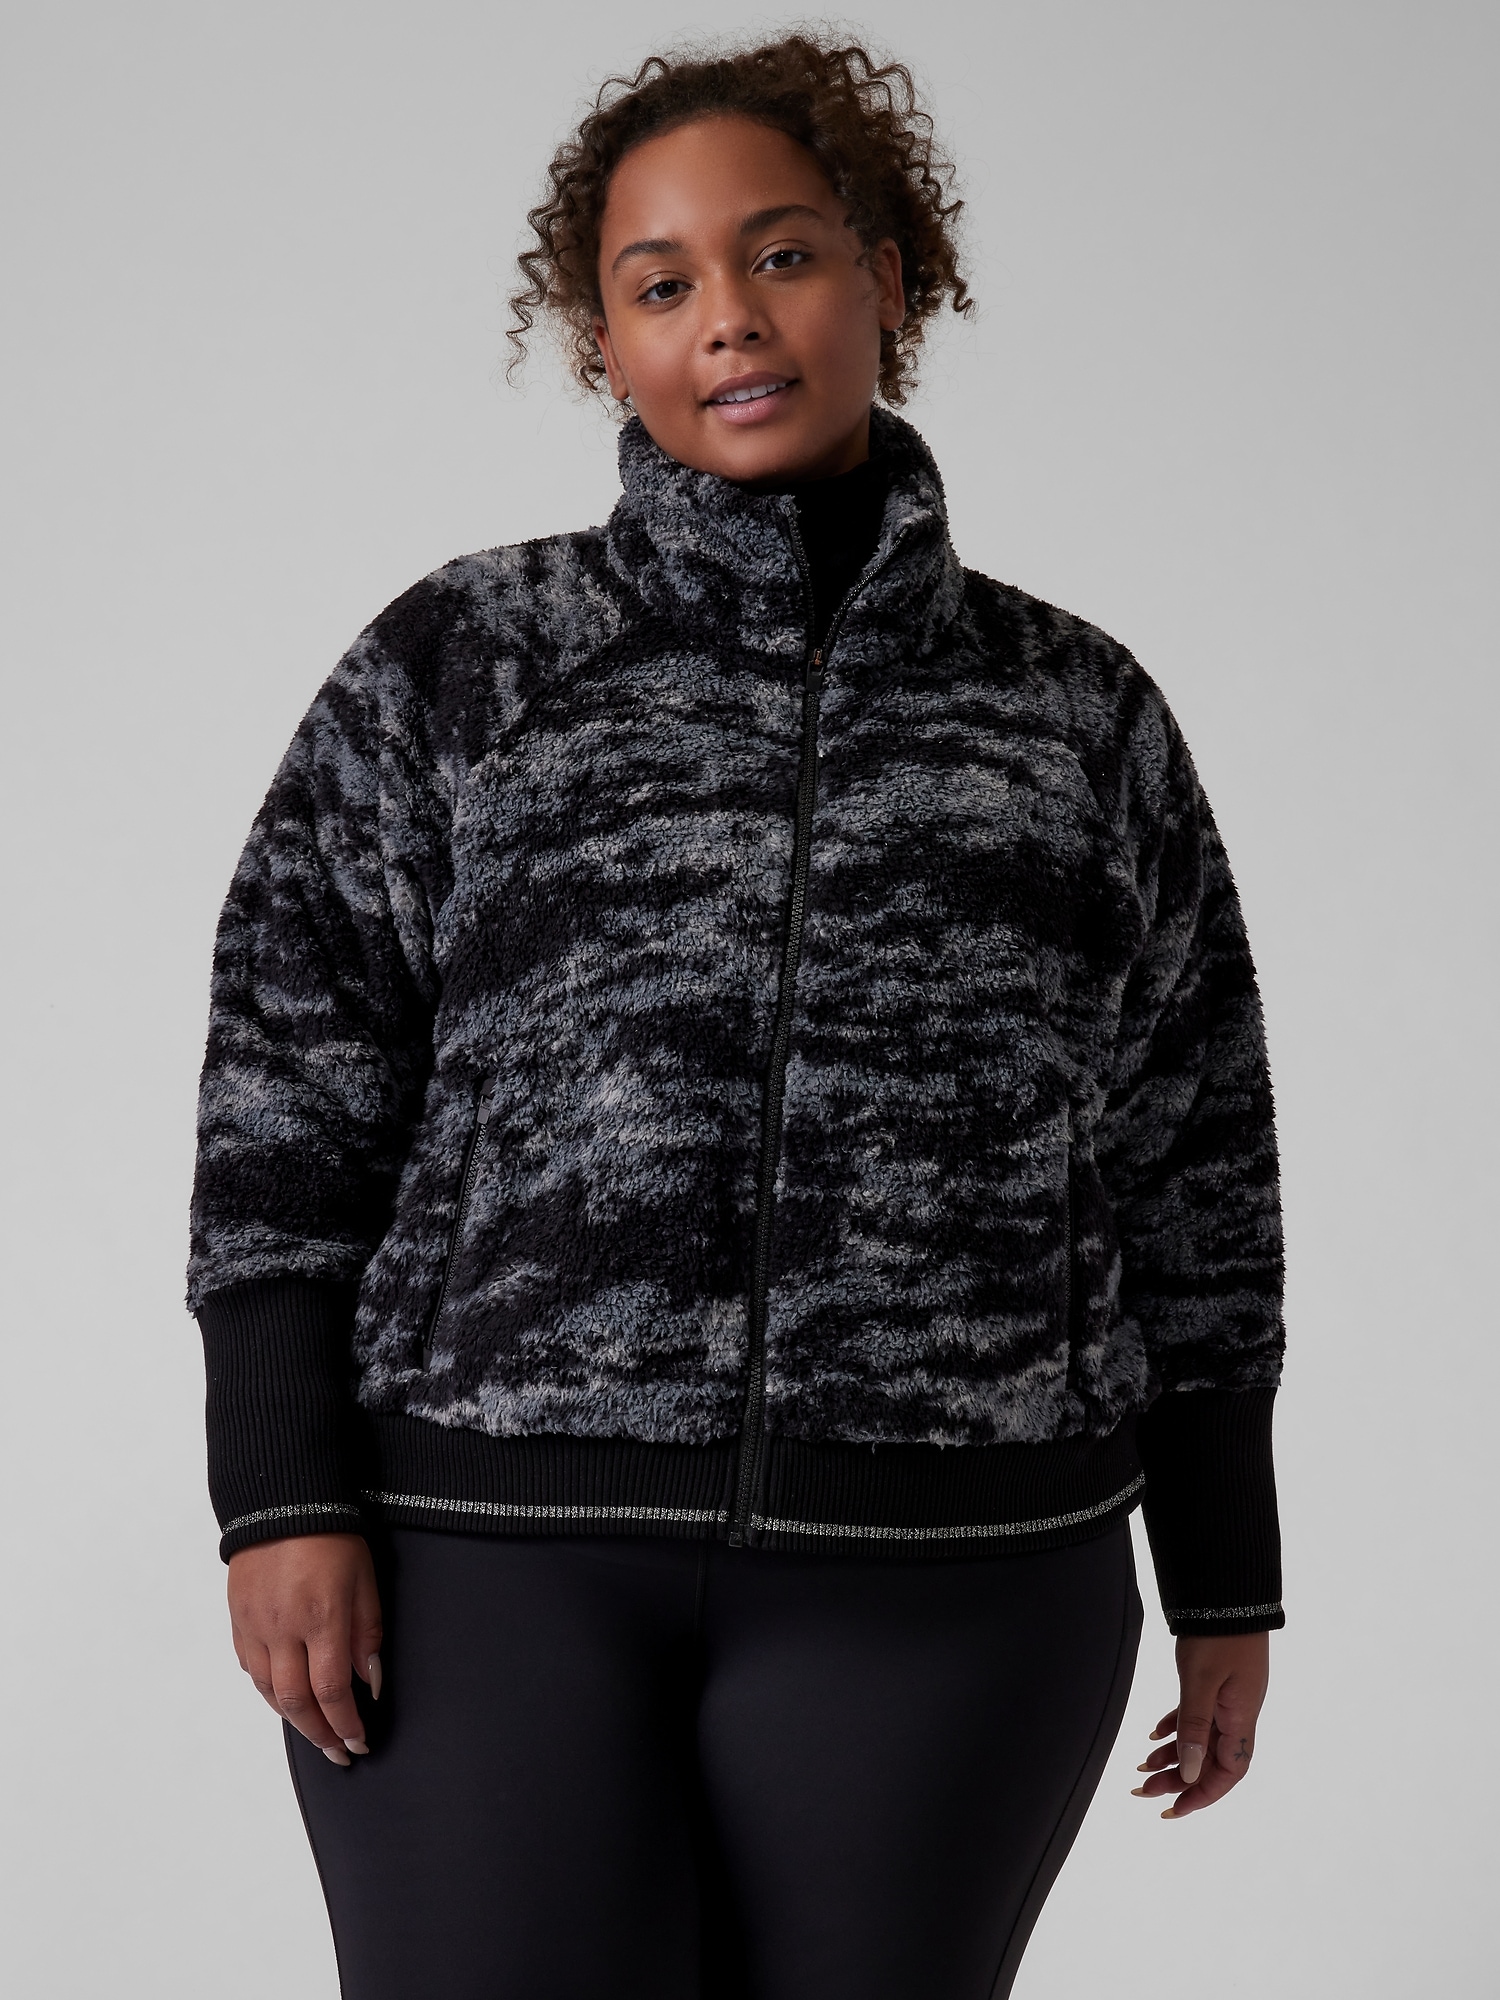 ATHLETA Tugga Coat  M Medium Black Cozy Sherpa CYA Jacket #982852 NEW